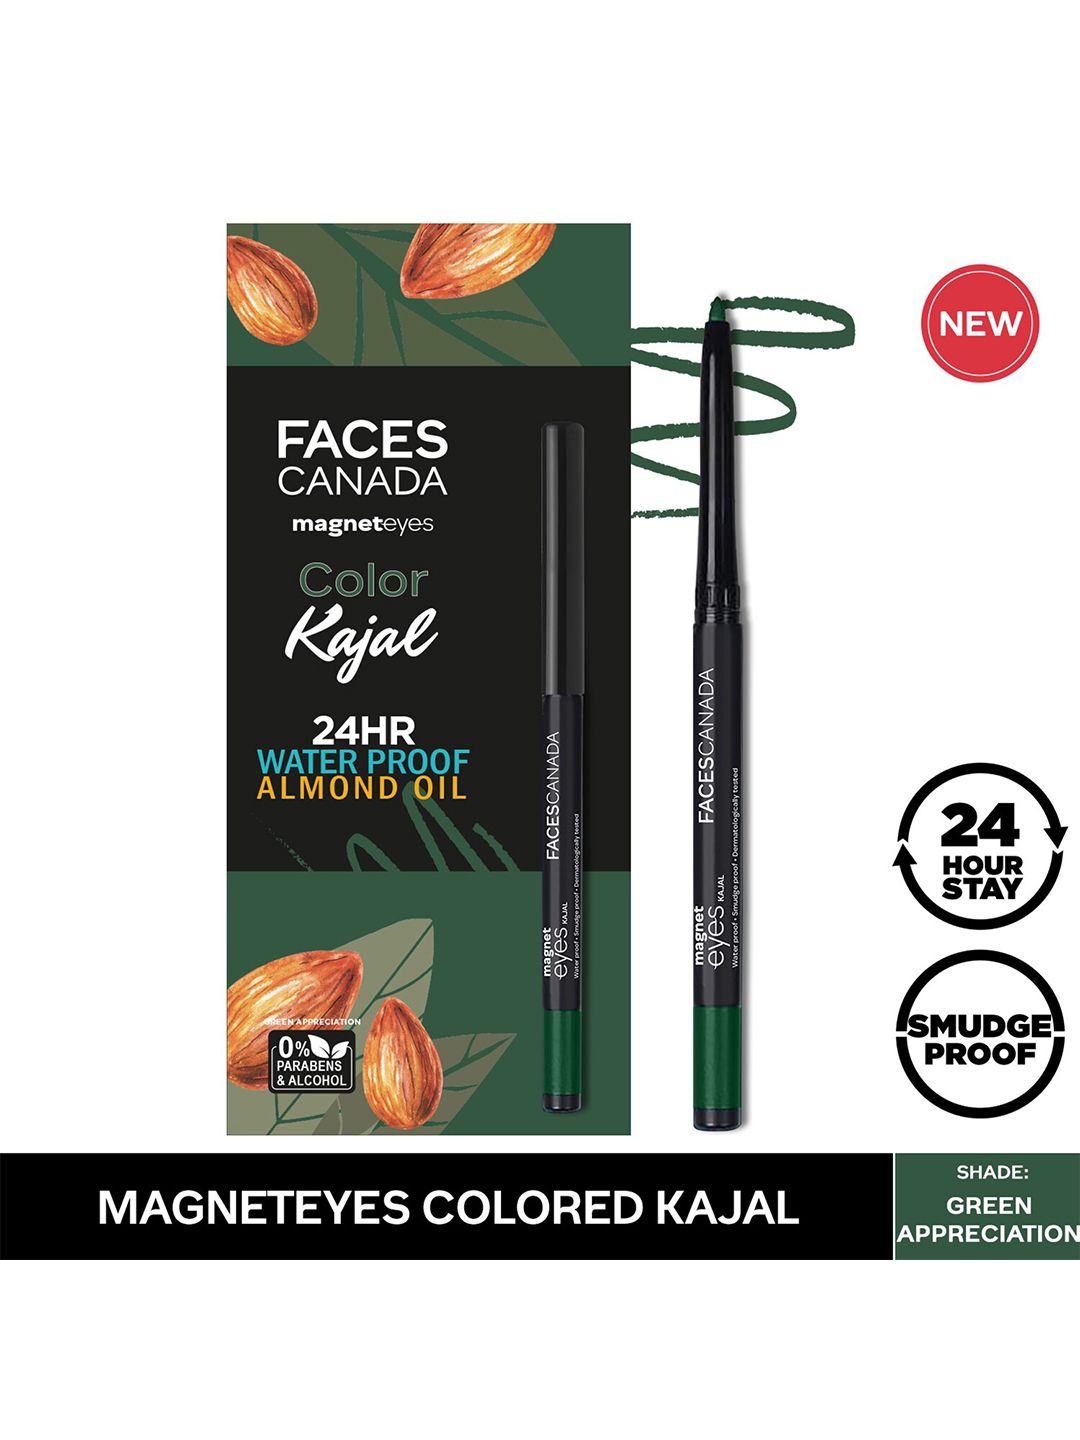 FACES CANADA Magneteyes Waterproof Color Kajal - Green Appreciation 02 Price in India